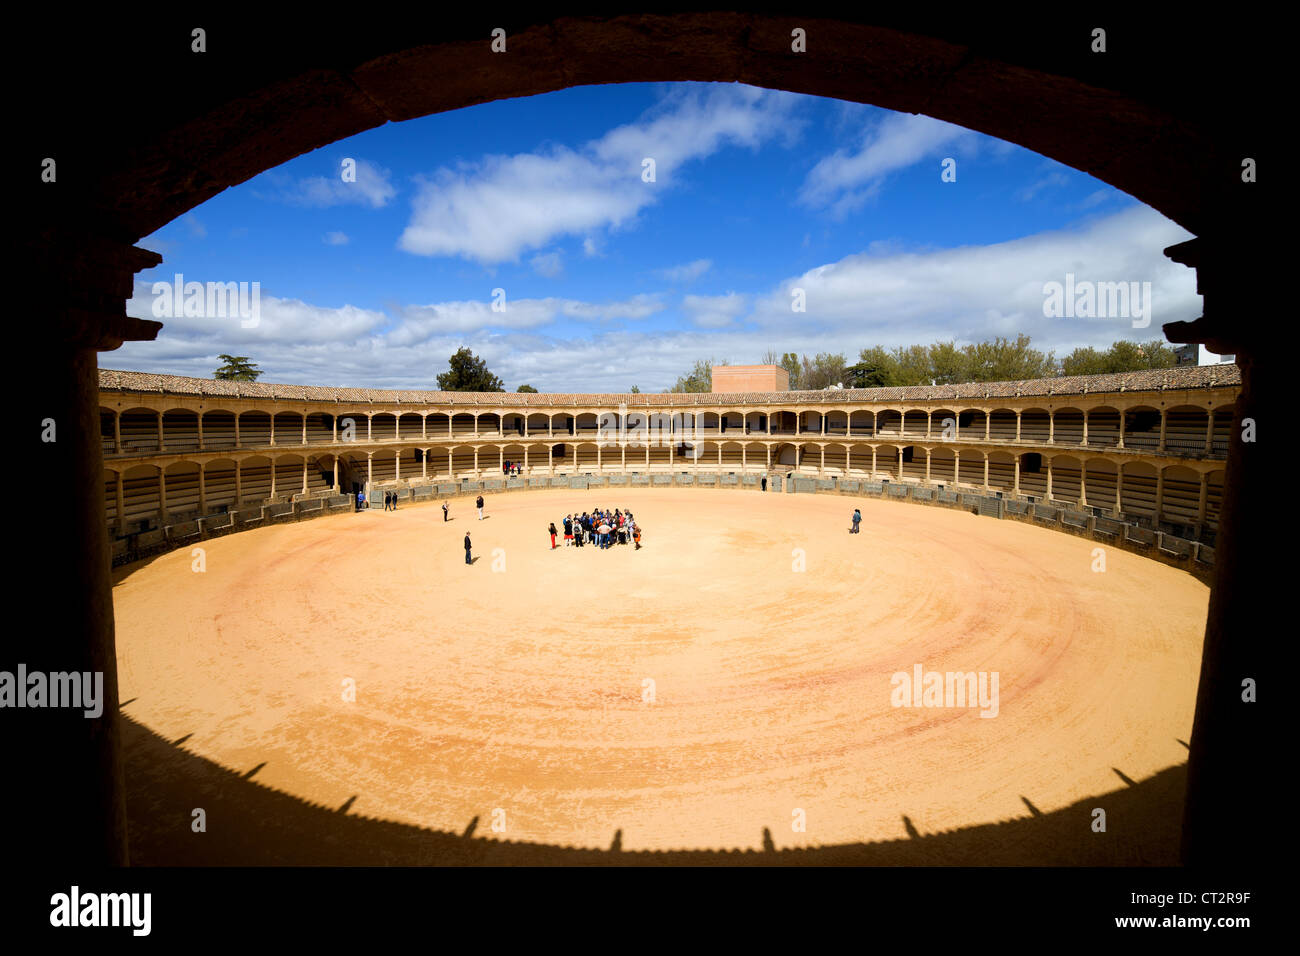 Bullring in Ronda aperto nel 1785, composizione di framing, vista dall'auditorium, uno dei più antichi arena in Spagna. Foto Stock